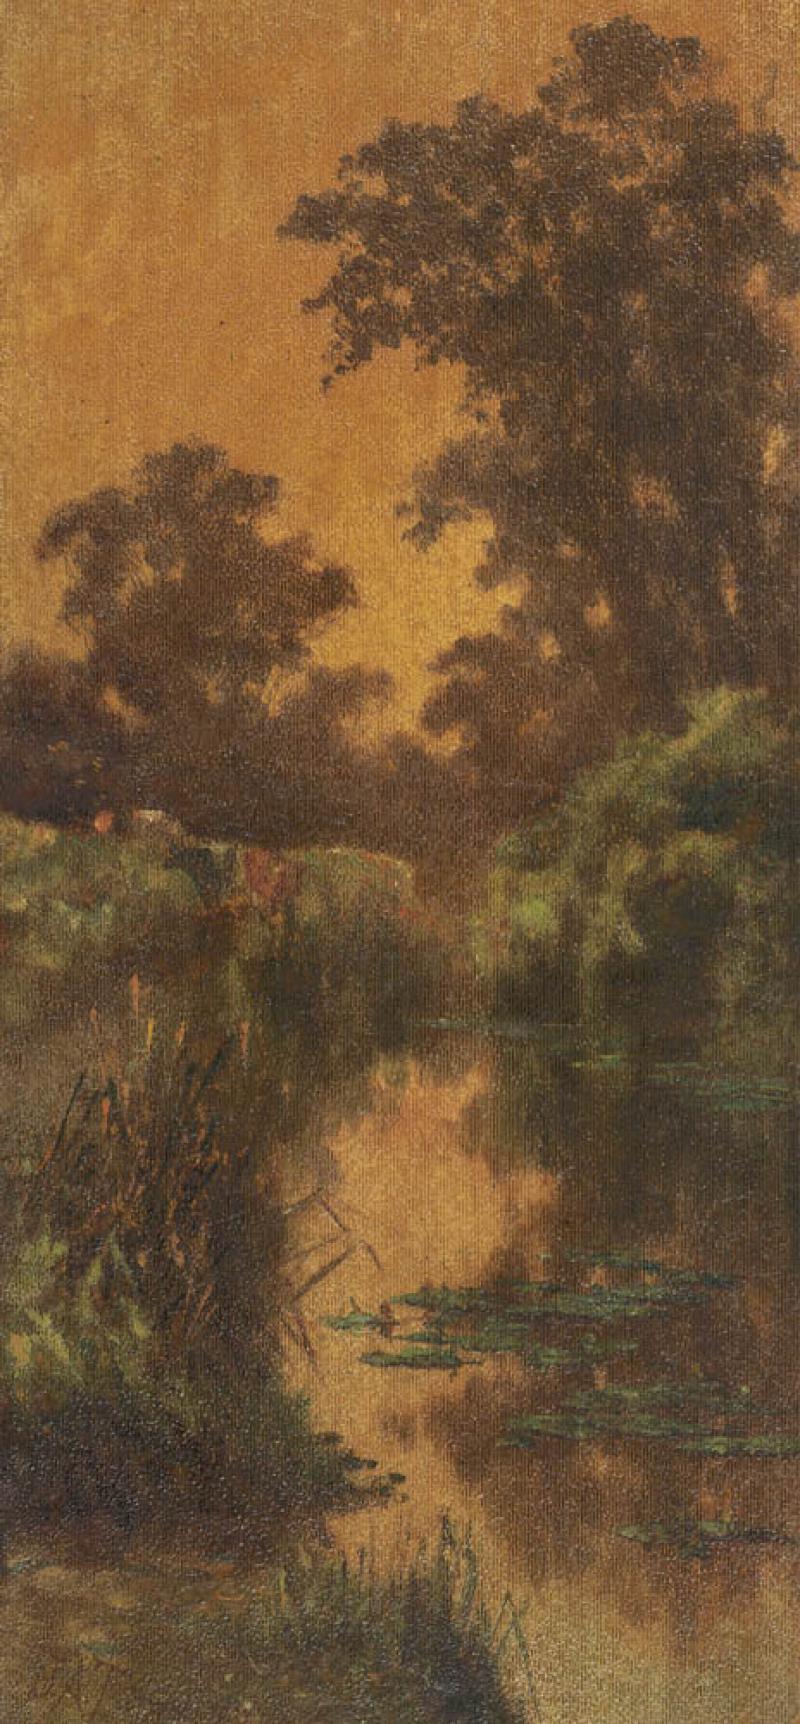 JAMES ALFRED TURNER - Untitled (Cattle in a River Landscape)